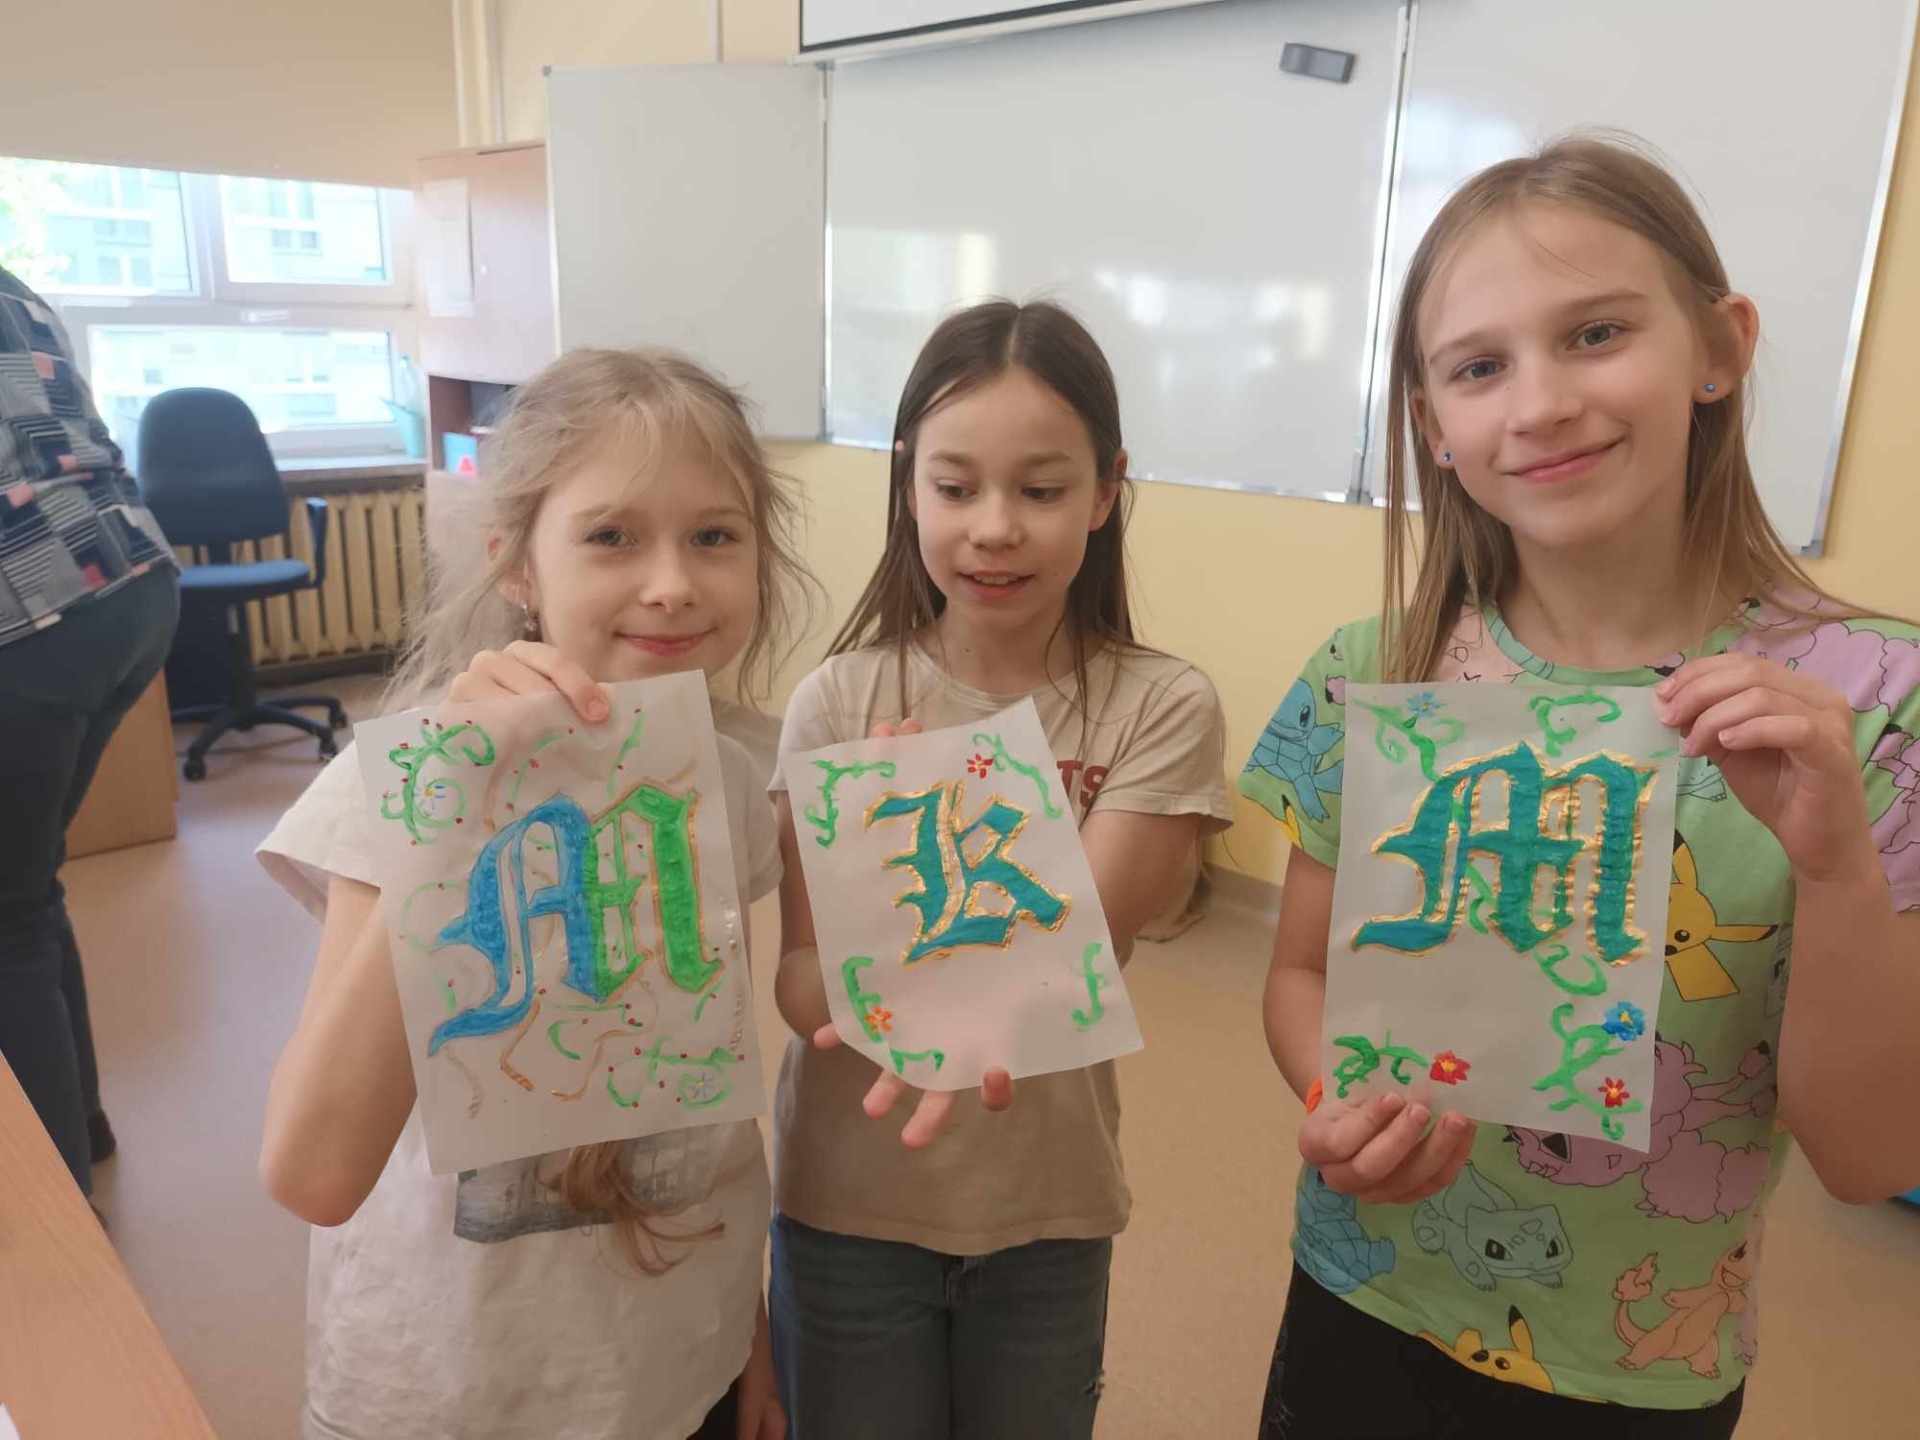 Uczennice prezentują swoje prace z warsztatów. Trzy dziewczynki trzymają w rękach kartki na których różnymi kolorami są narysowane ozdobne litery. Dziewczyny stoją w klasie szkolnej, w tle widać fotel nauczyciela i tablicę multimedialną.